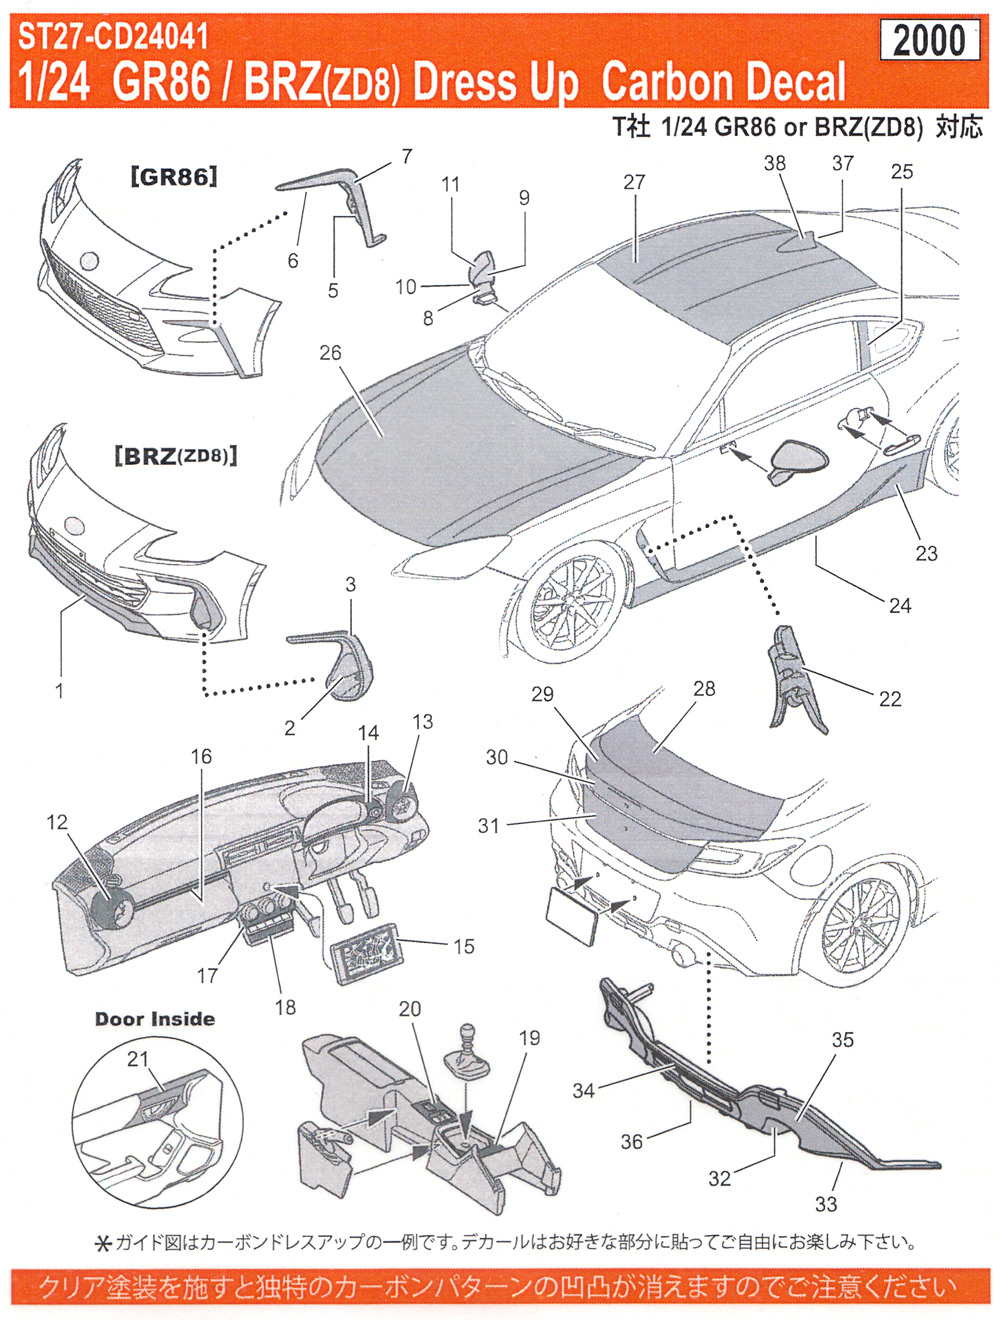 トヨタ GR86 / スバル BRZ (ZD8) ドレスアップ カーボンデカール デカール (スタジオ27 ツーリングカー/GTカー カーボンデカール No.CD24041) 商品画像_1